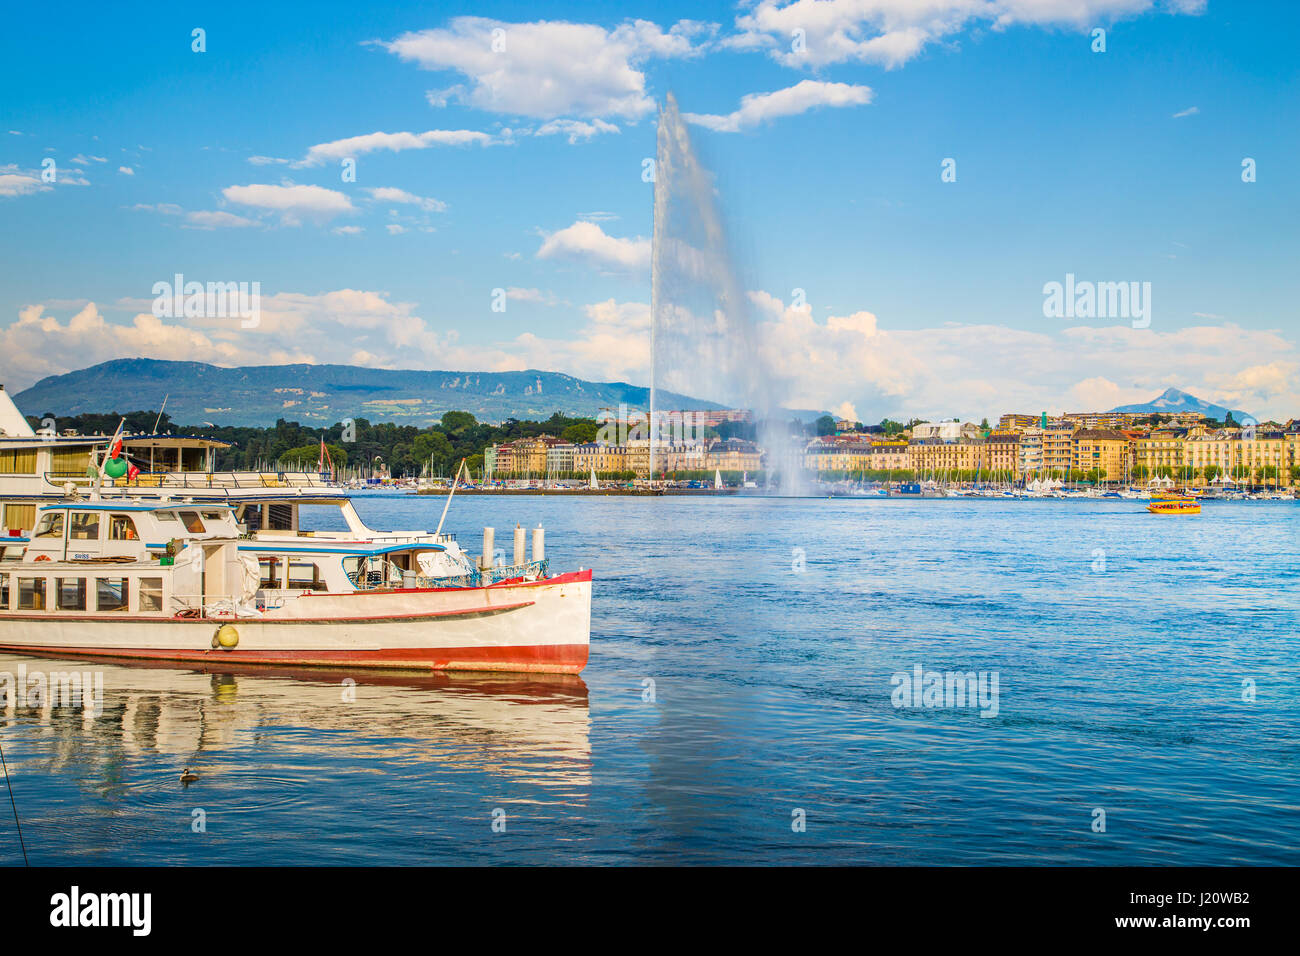 Vue panoramique de la ville de Genève historique avec le célèbre Jet d'eau et les navires à l'Harbour district dans la belle lumière du soir au coucher du soleil, Suisse Banque D'Images